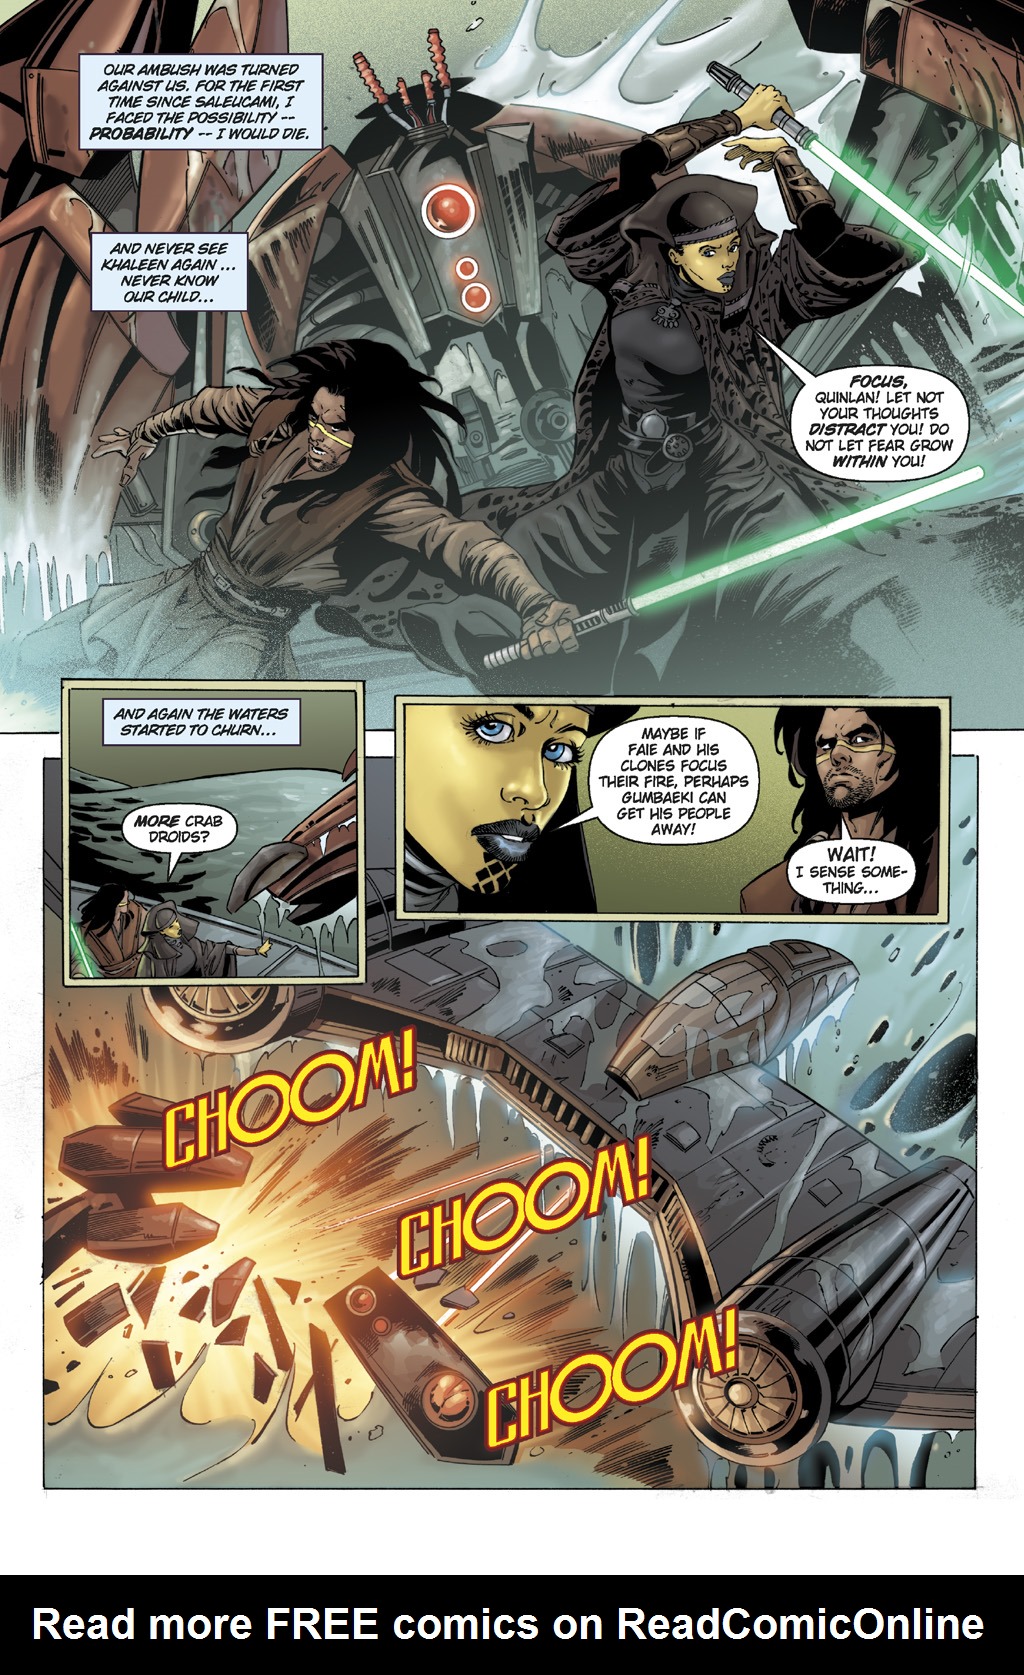 Read online Star Wars: Clone Wars comic -  Issue # TPB 9 - 13